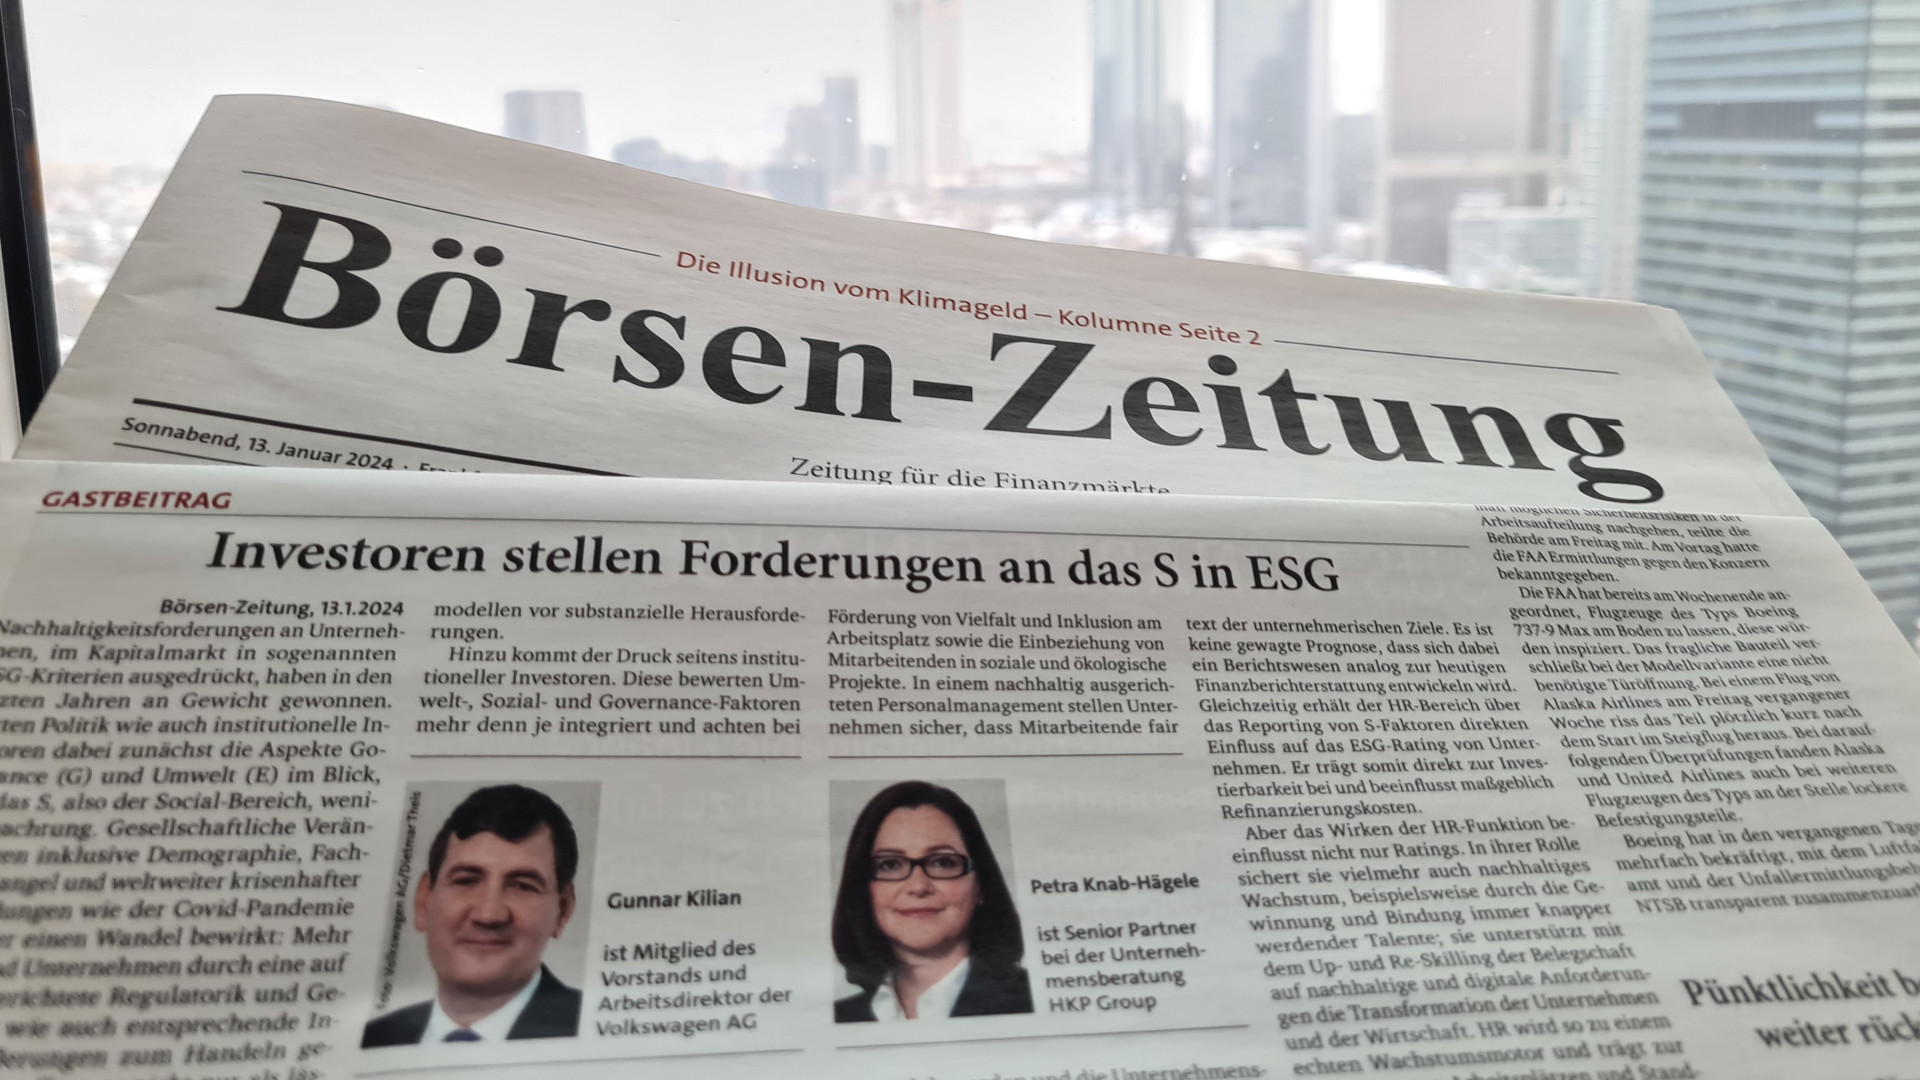 Die Print-Ausgabe der Börsen-Zeitung vom 13.01.2024 vor der Frankfurter Skyline. Zu lesende Überschrift: Investoren stellen Forderungen an das S in ESG.